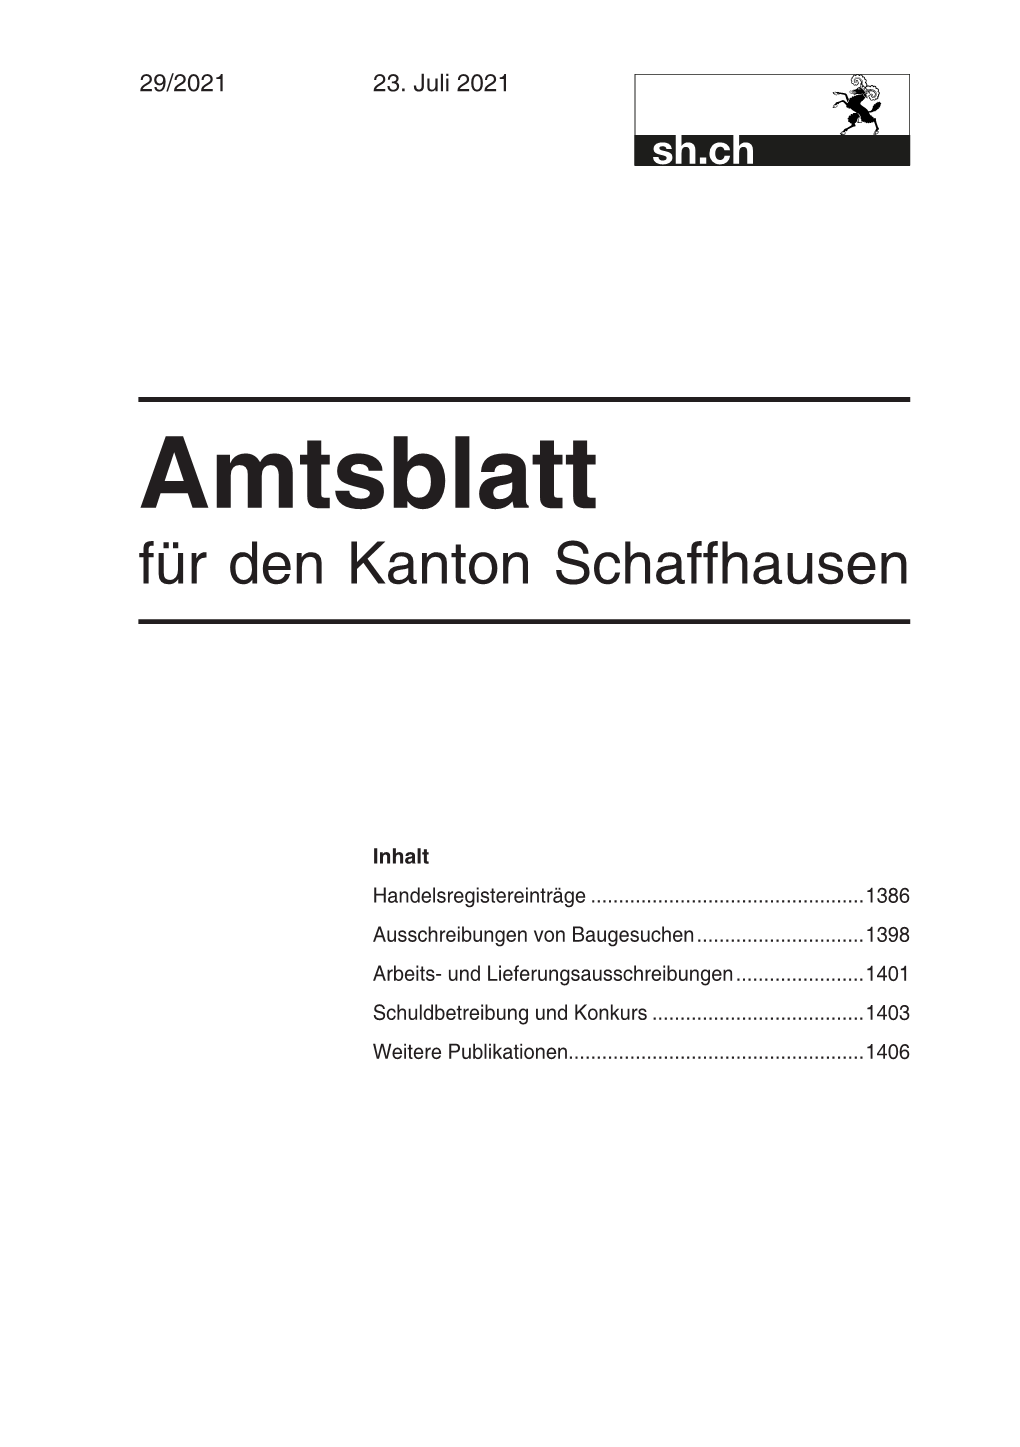 Amtsblatt Für Den Kanton Schaffhausen